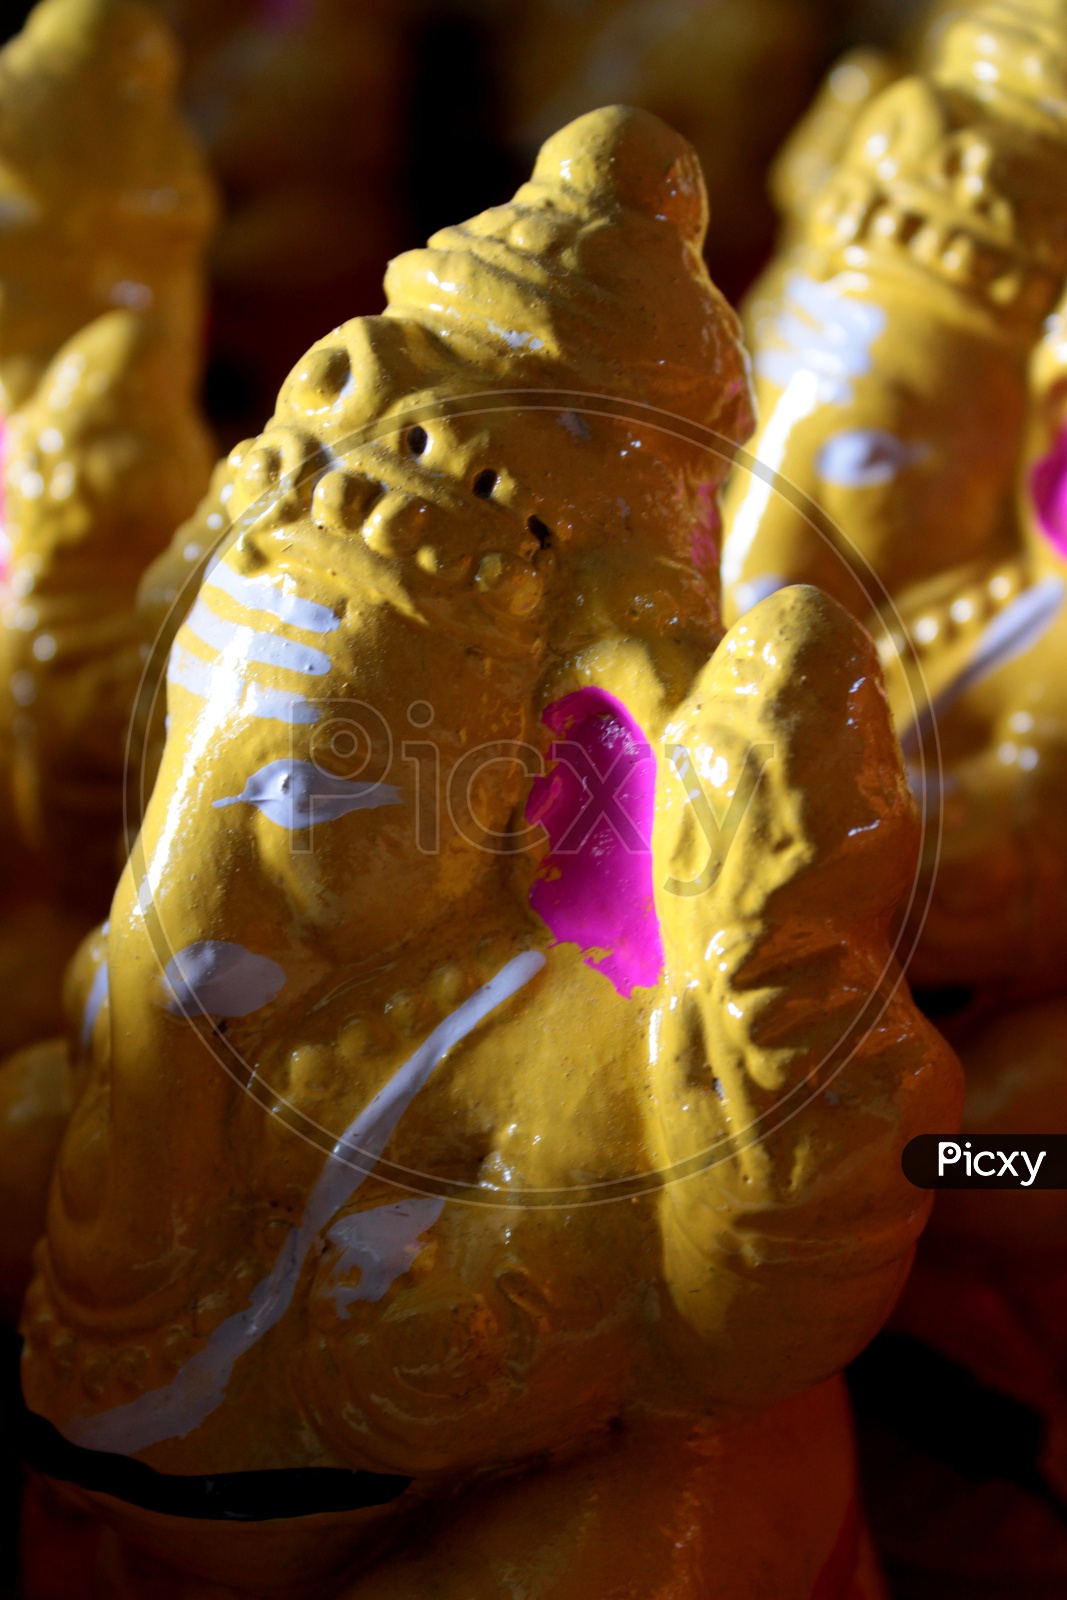 Clay Idols of Lord Ganesha getting ready